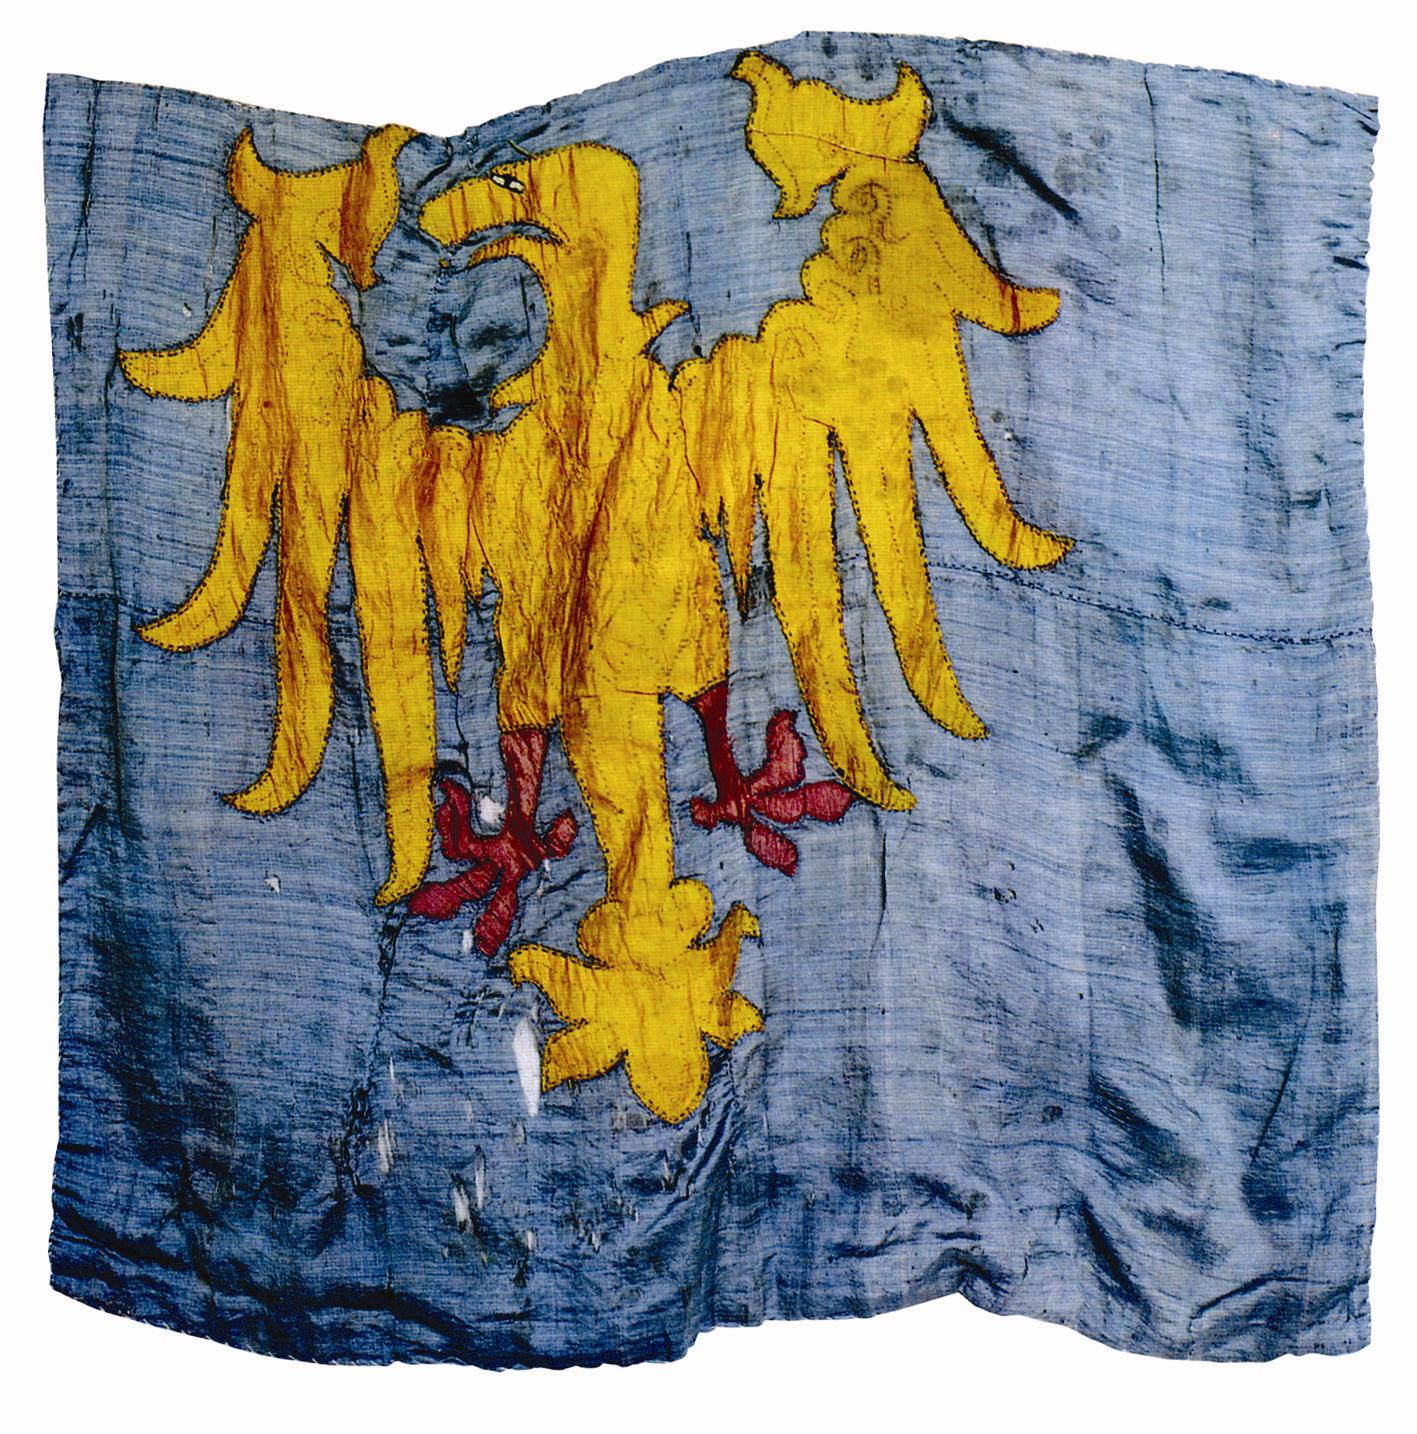 La bandiera del Friuli (bandiere dal Friûl in friulano) è la bandiera della regione storica del Friuli, ufficialmente riconosciuta dalla legge che tutela le minoranze linguistiche, è esposta nei comuni e nelle provincie friulanofone. Al centro di essa campeggia un'aquila gialla rivolta verso destra con le ali aperte, su uno sfondo blu.